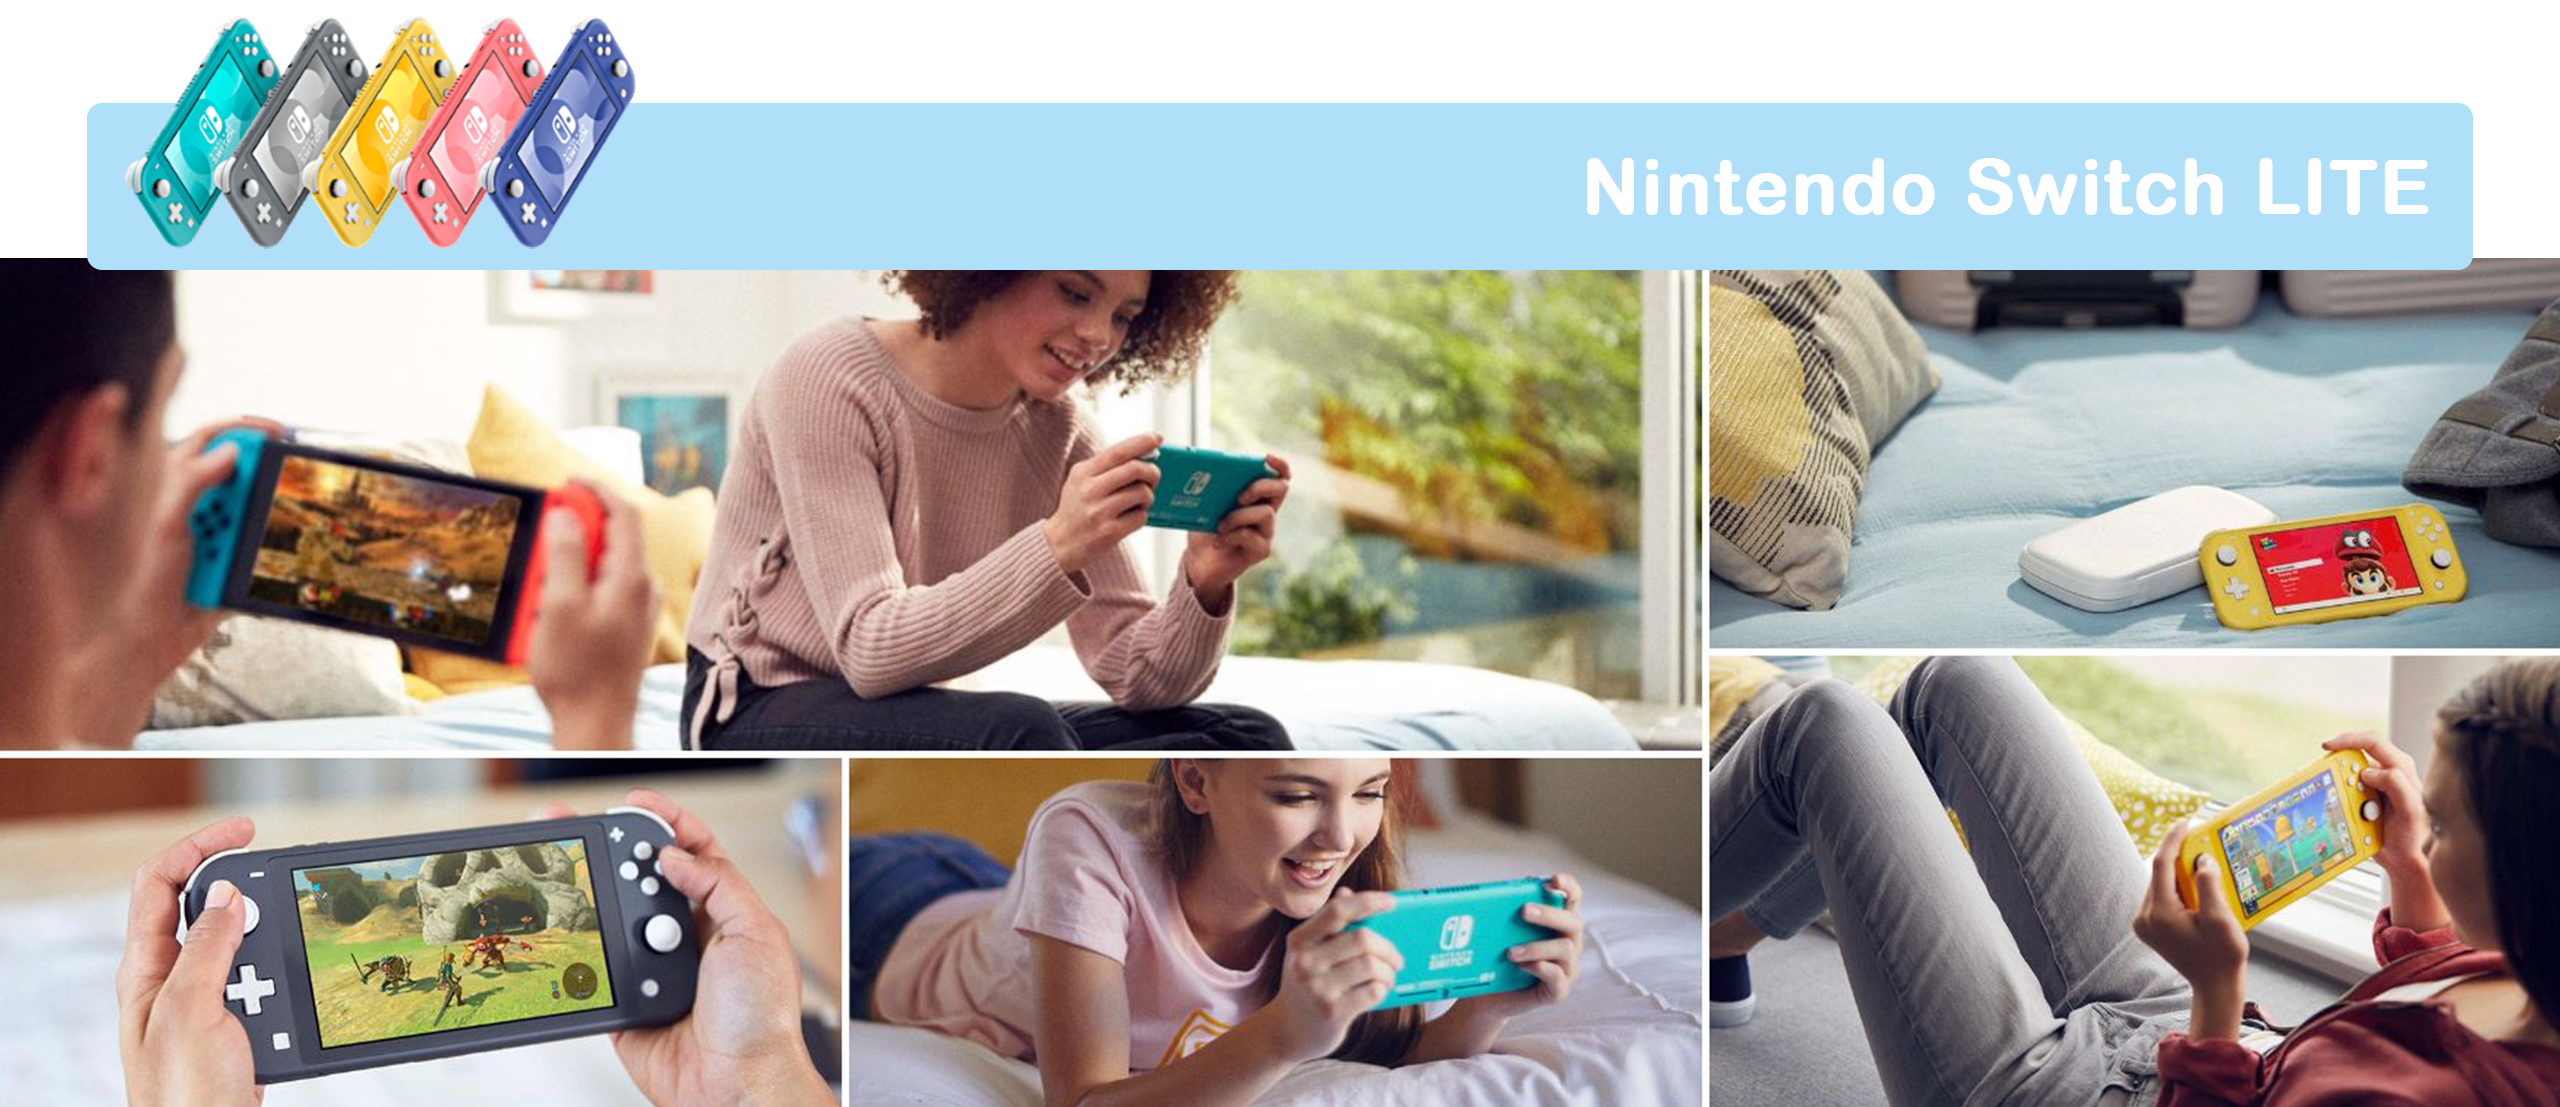 Die Nintendo Switch Lite ist perfekt für ein Handhelderlebnis - Bei GameStop sichern